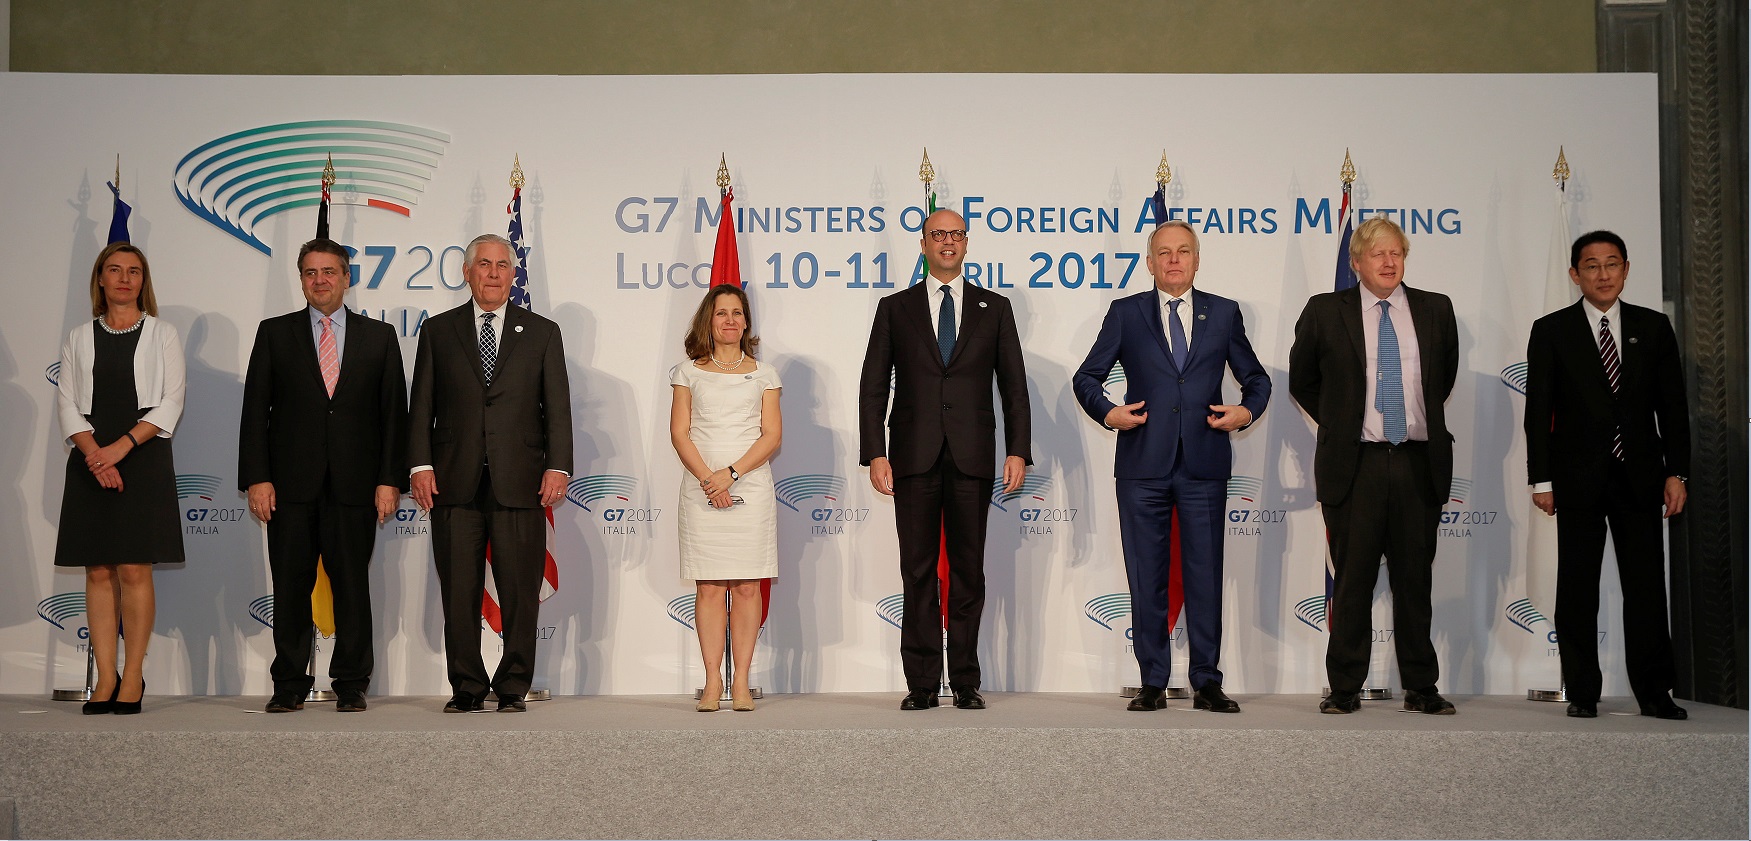 Ministros de Relaciones Exteriores del G7 se reúnen en Lucca, Italia; los funcionarios dicen que la solución al conflicto sirio debe ser político y no militar (Reuters)